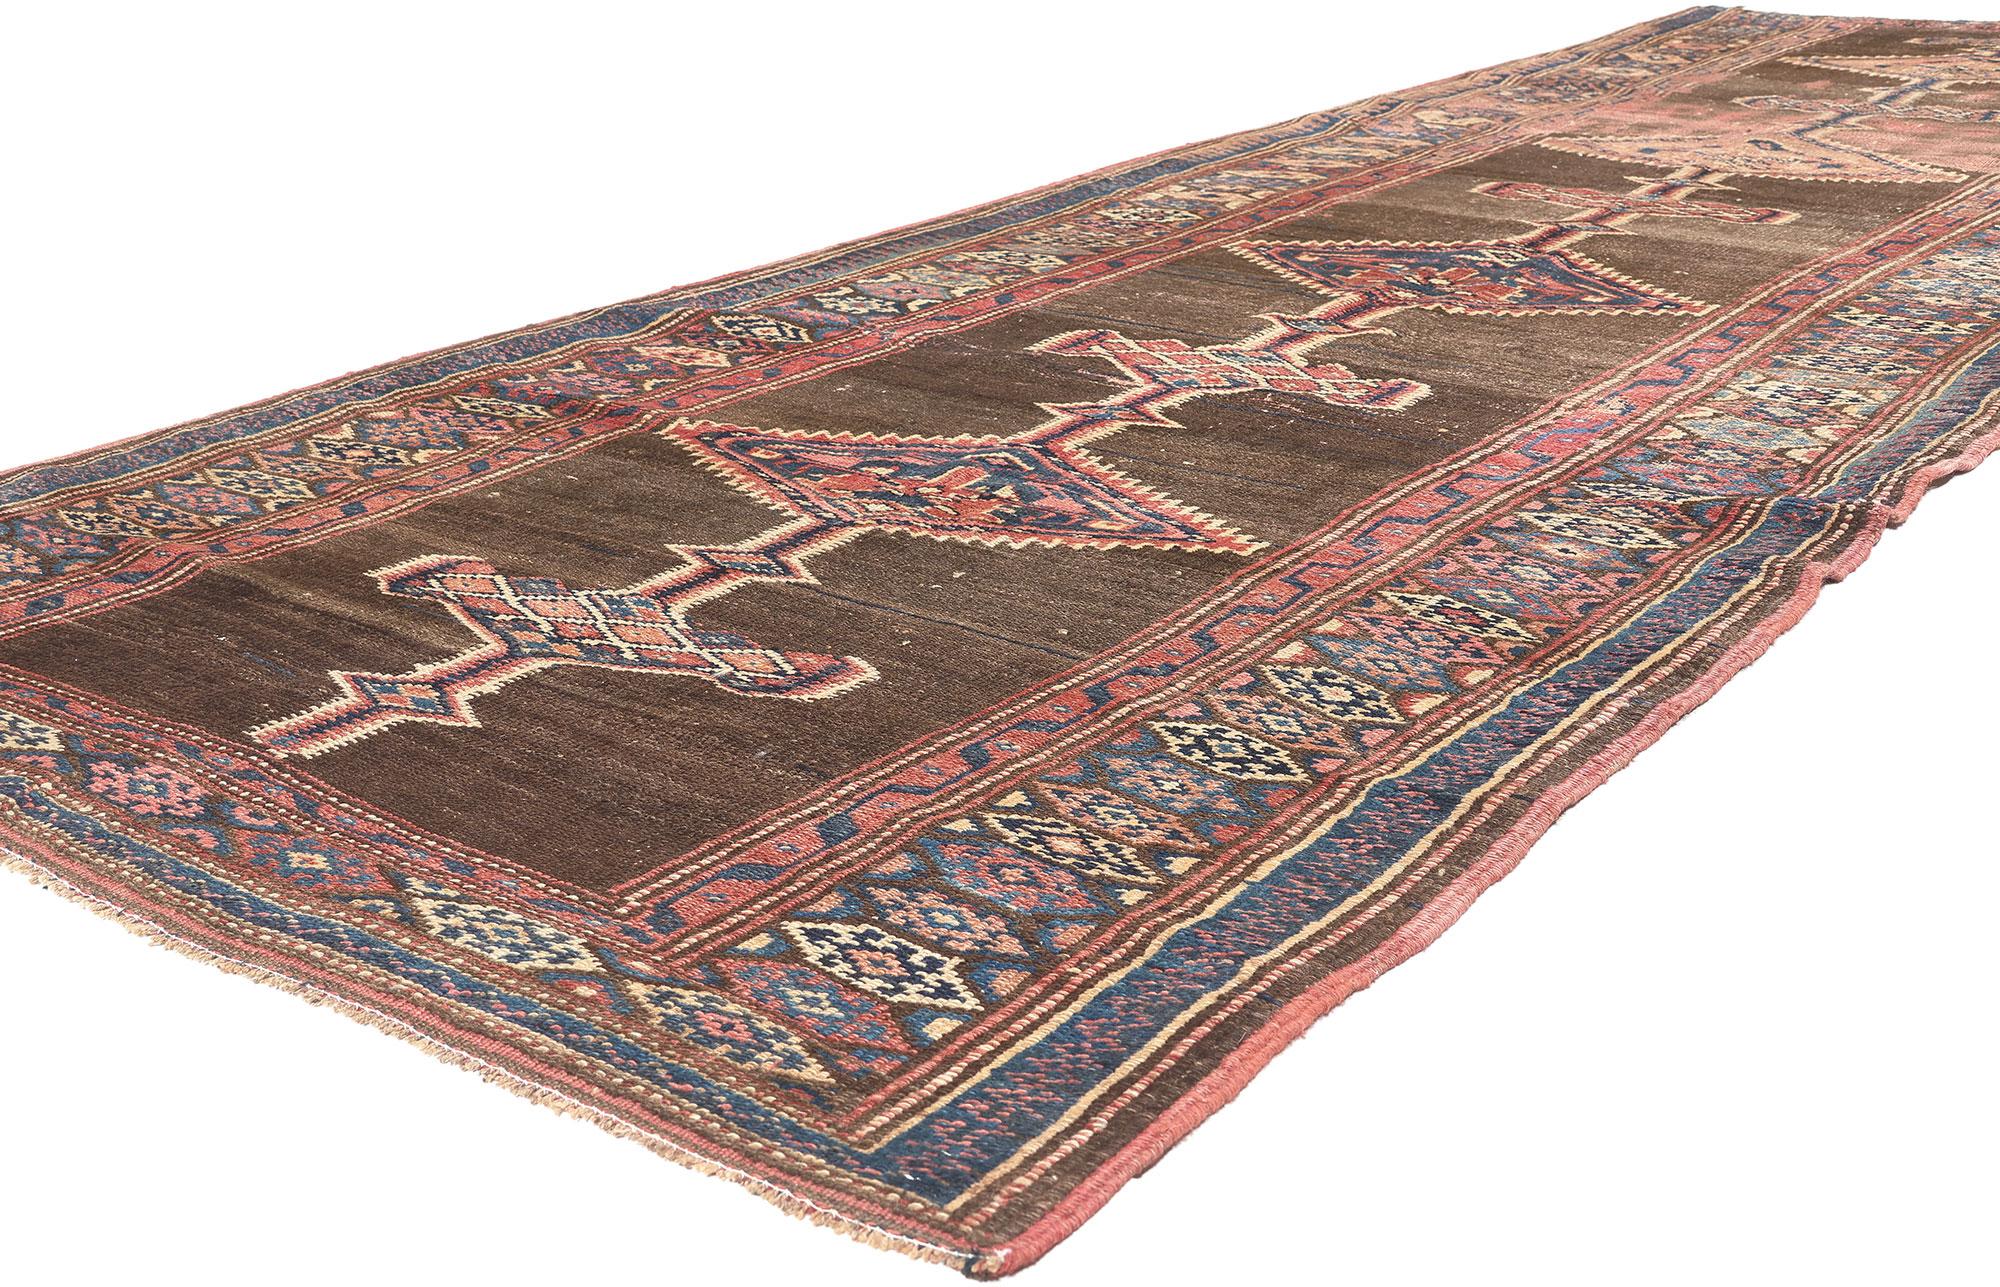 61262 Tapis persan antique Sarab, 04'04 x 13'02.
L'élégance naturelle rencontre le style tribal dans ce chemin de table en laine nouée à la main de l'ancien tapis persan Sarab.

Rendu dans des tons panachés de brun, rouge brique, bleu, tan, café,